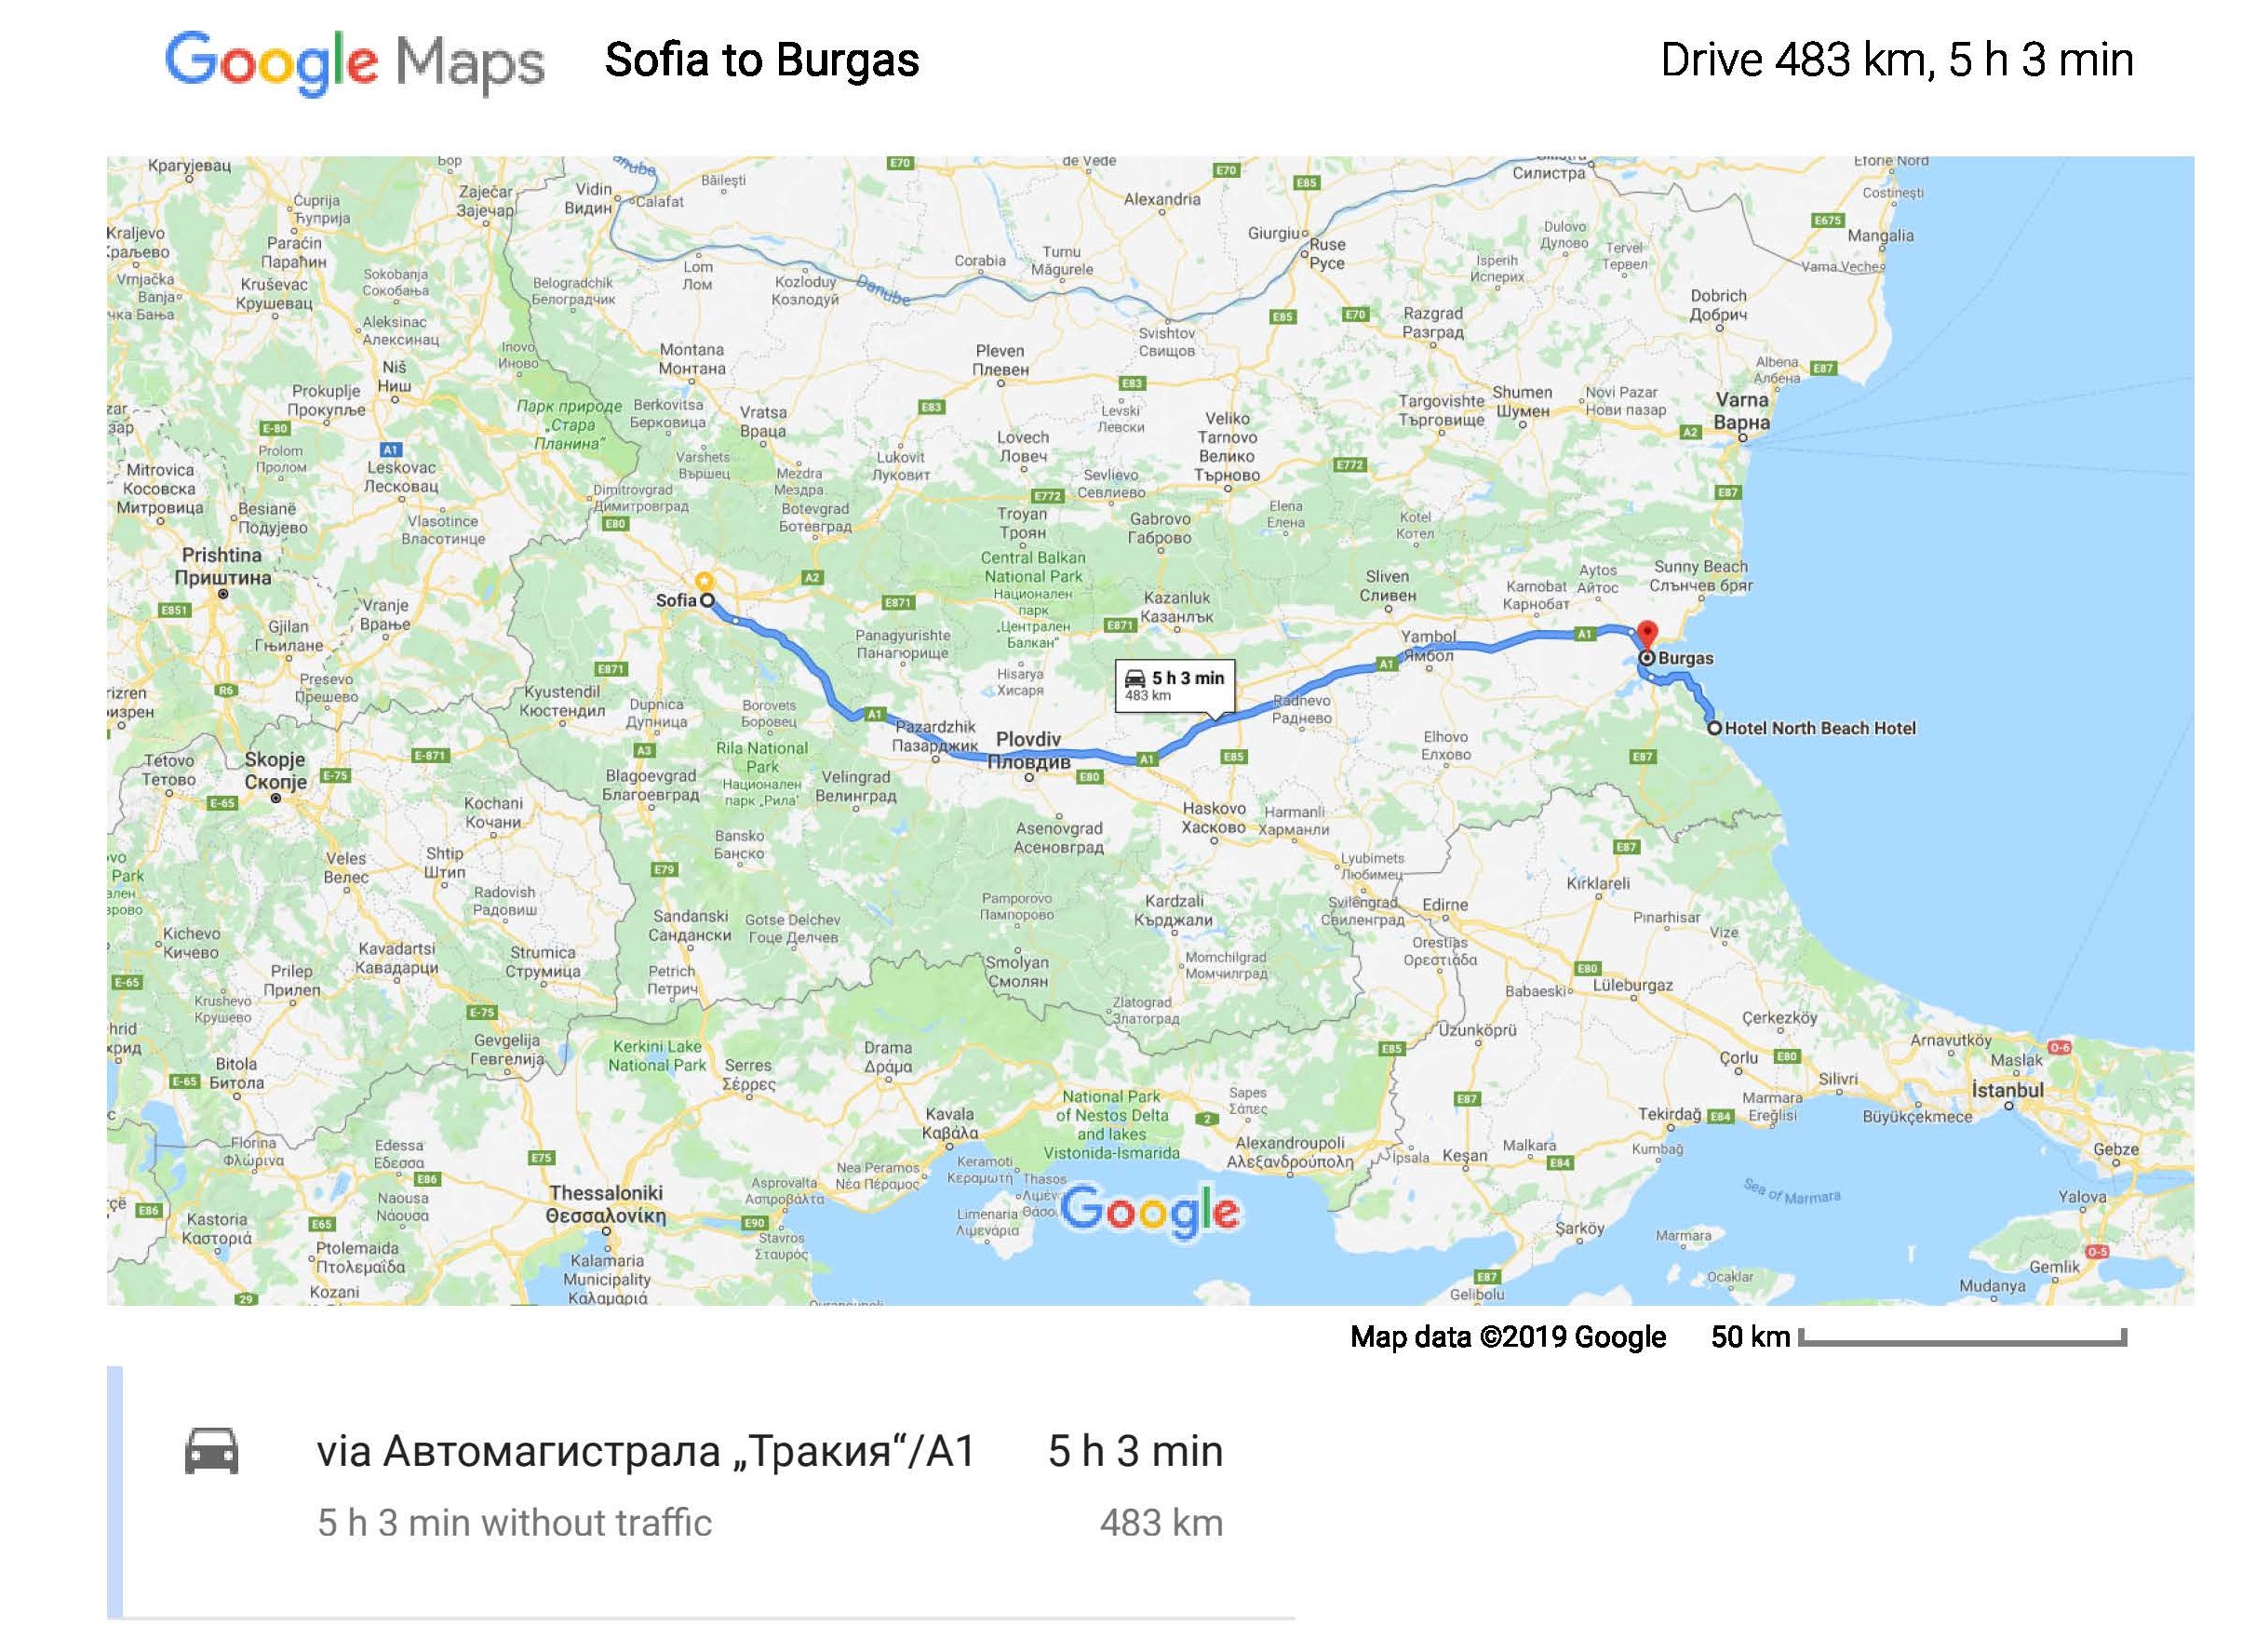 Sofia to Burgas - Google Maps